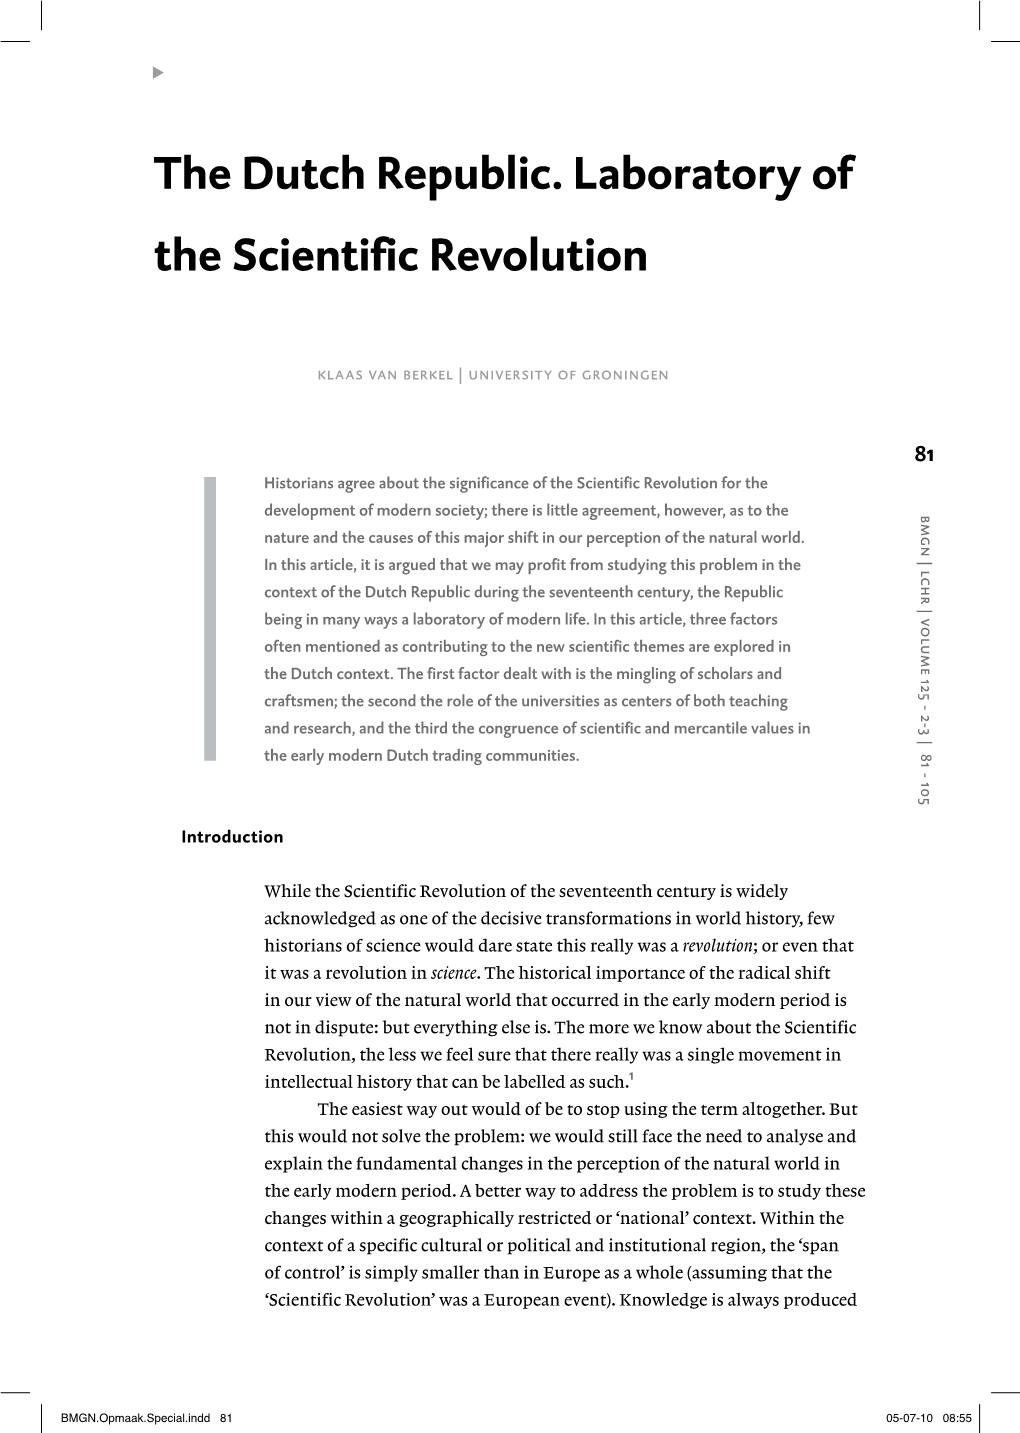 The Dutch Republic. Laboratory of the Scientific Revolution